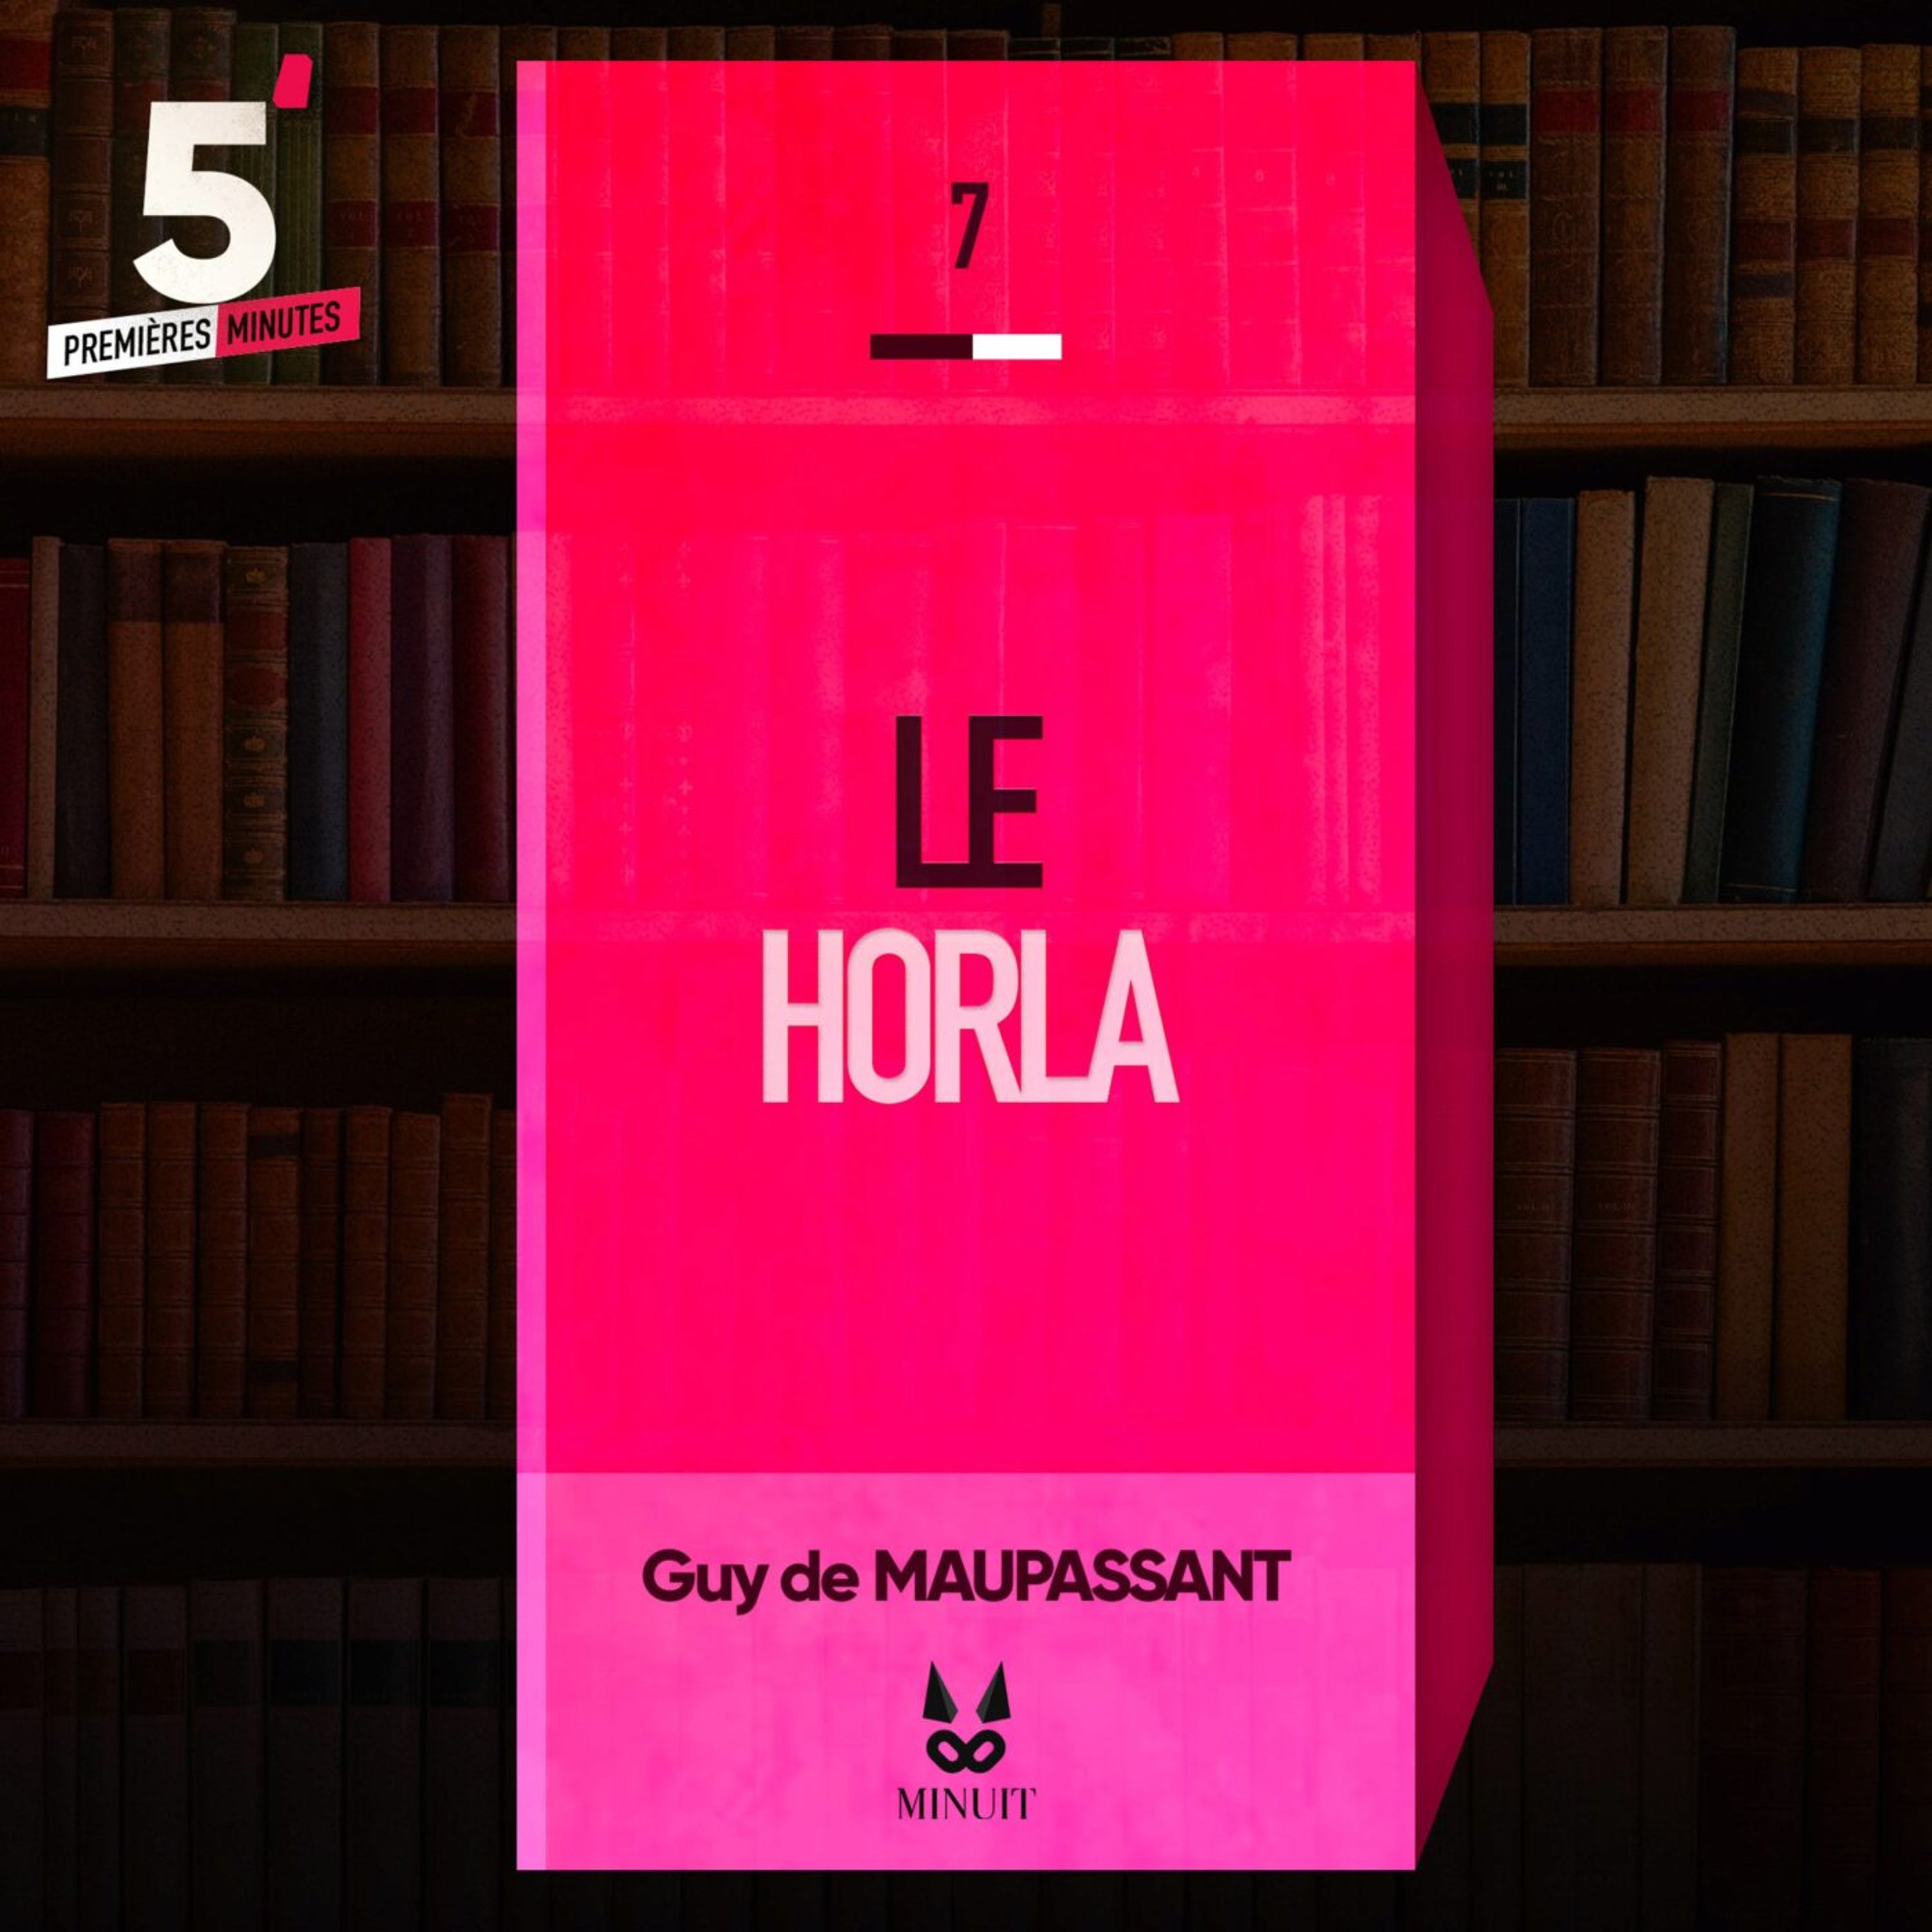 "Le Horla" • Guy de MAUPASSANT